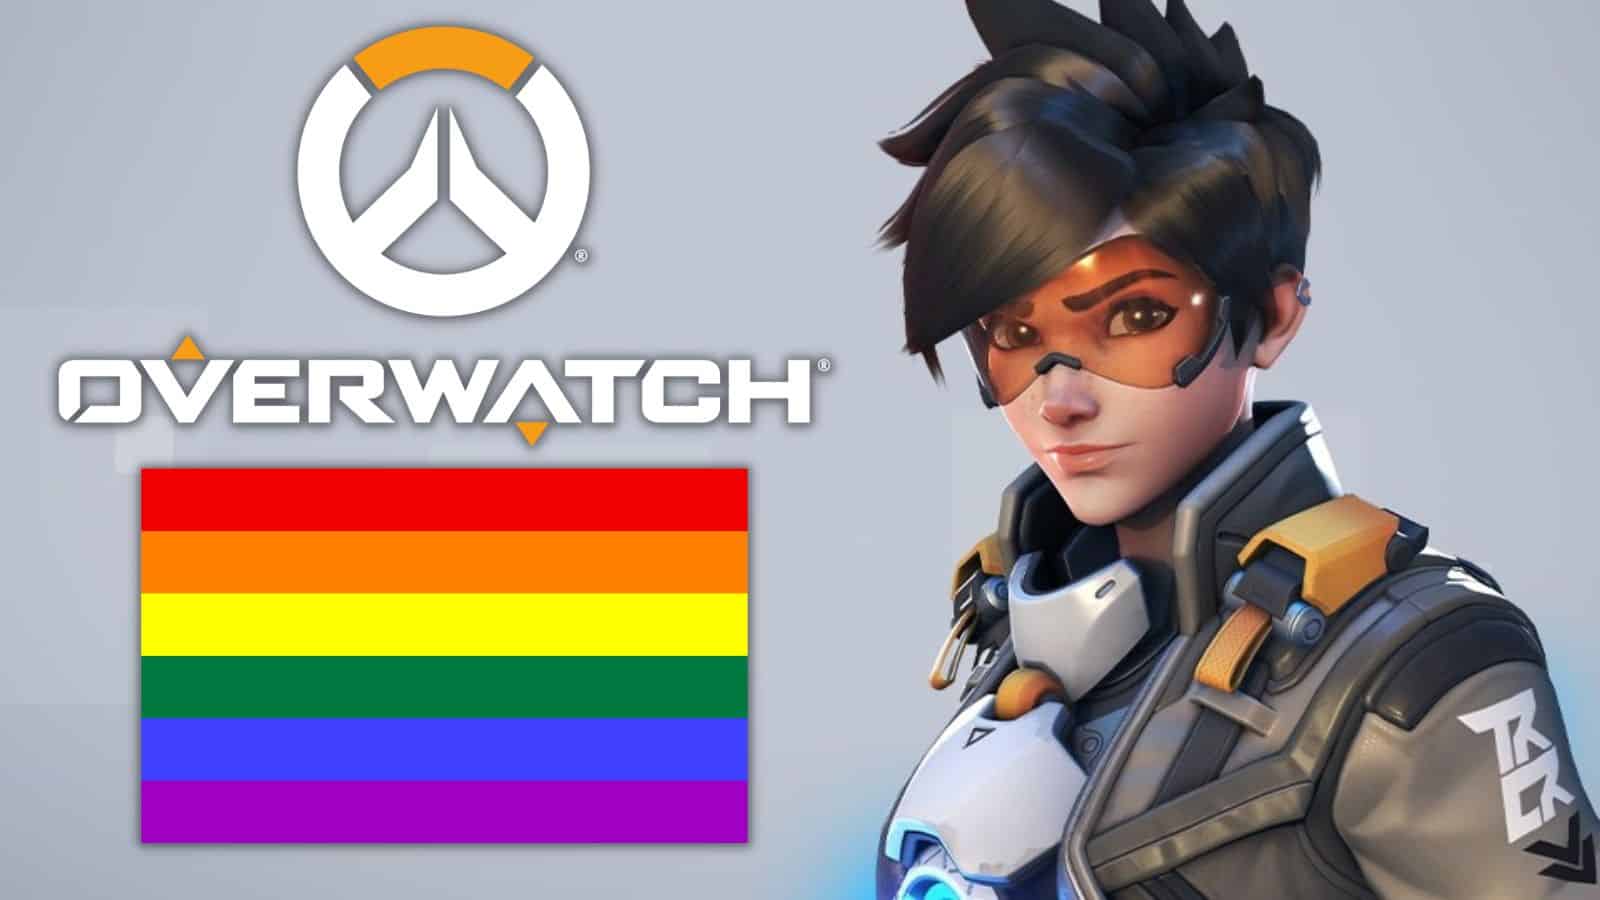 Tracer é a primeira personagem LGBT de 'Overwatch' - ESPN